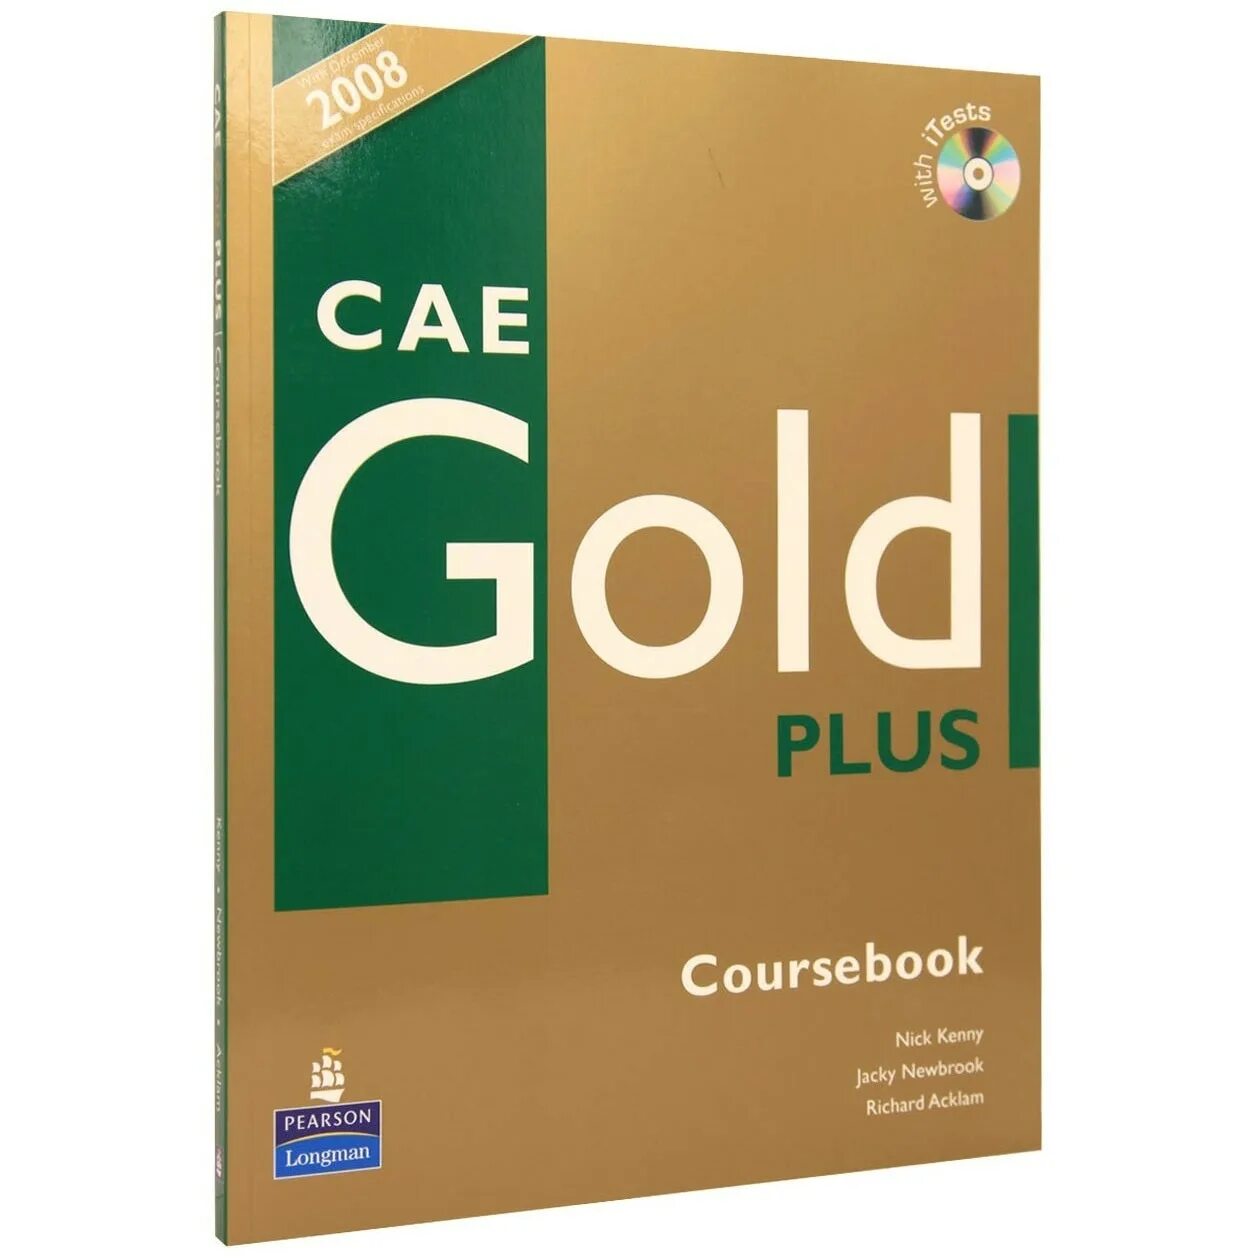 CAE Gold Plus Coursebook. Gold Advanced CAE Coursebook. FCE Gold Plus Coursebook. Gold Advanced Coursebook 2015.